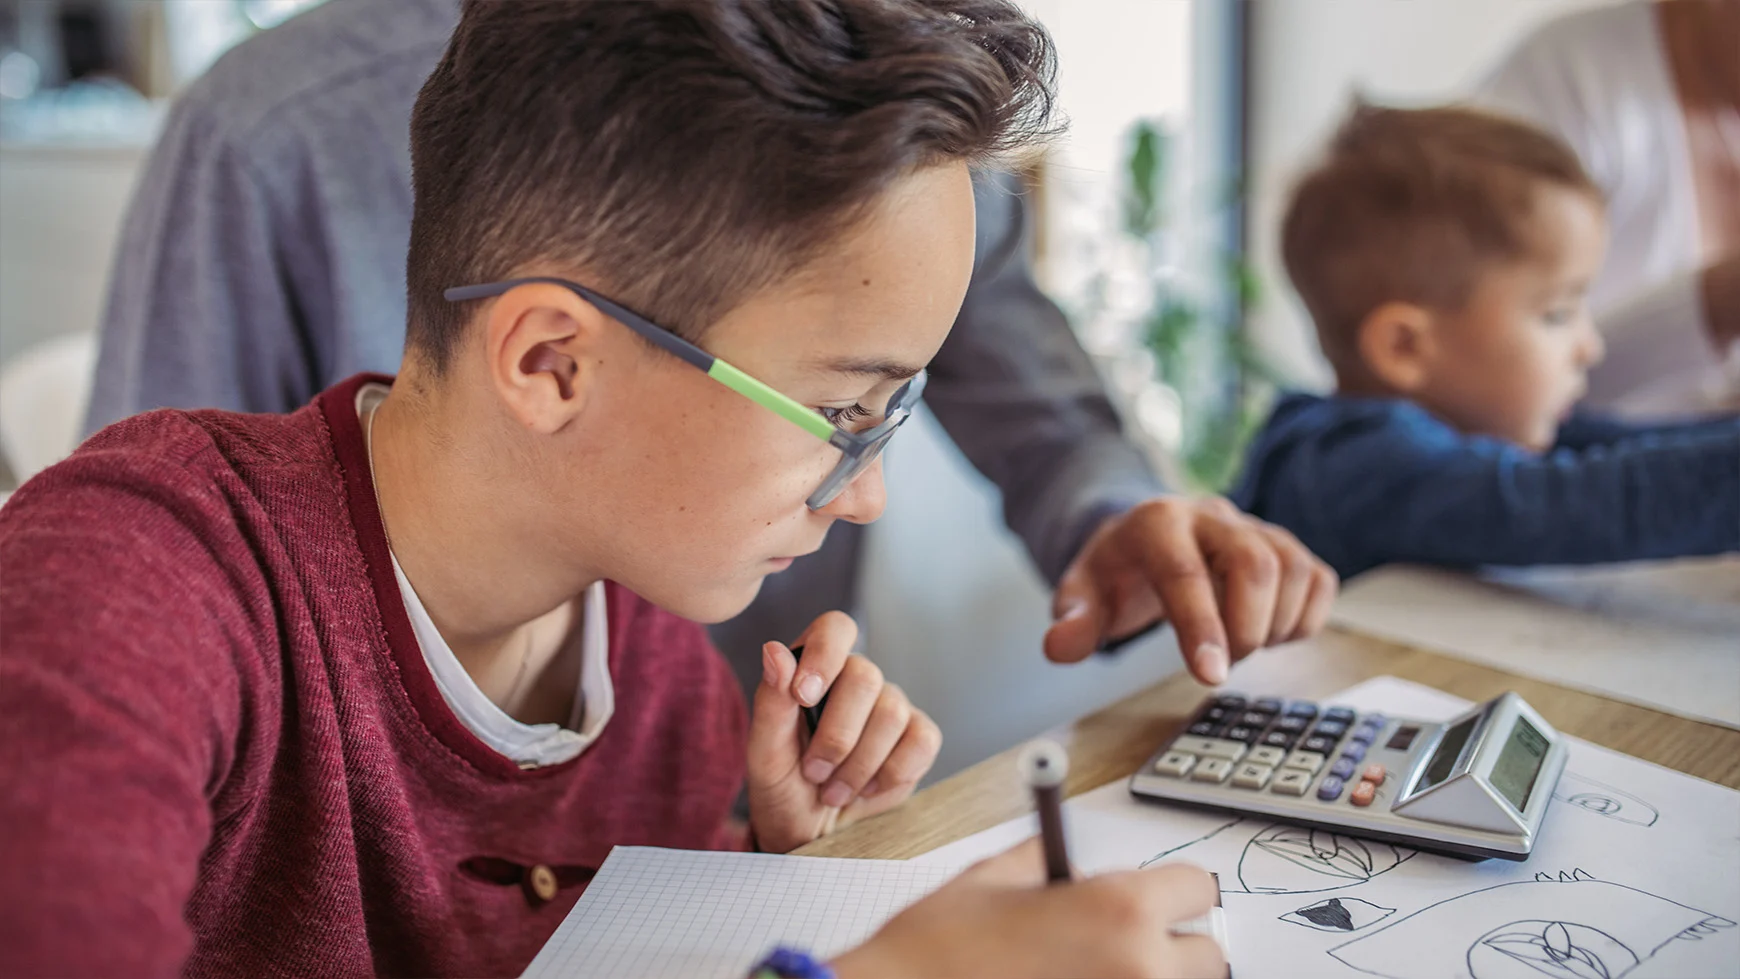 Un padre usa una calculadora junto a su hijo que usa lentes y hace la tarea de matemáticas con un lápiz.